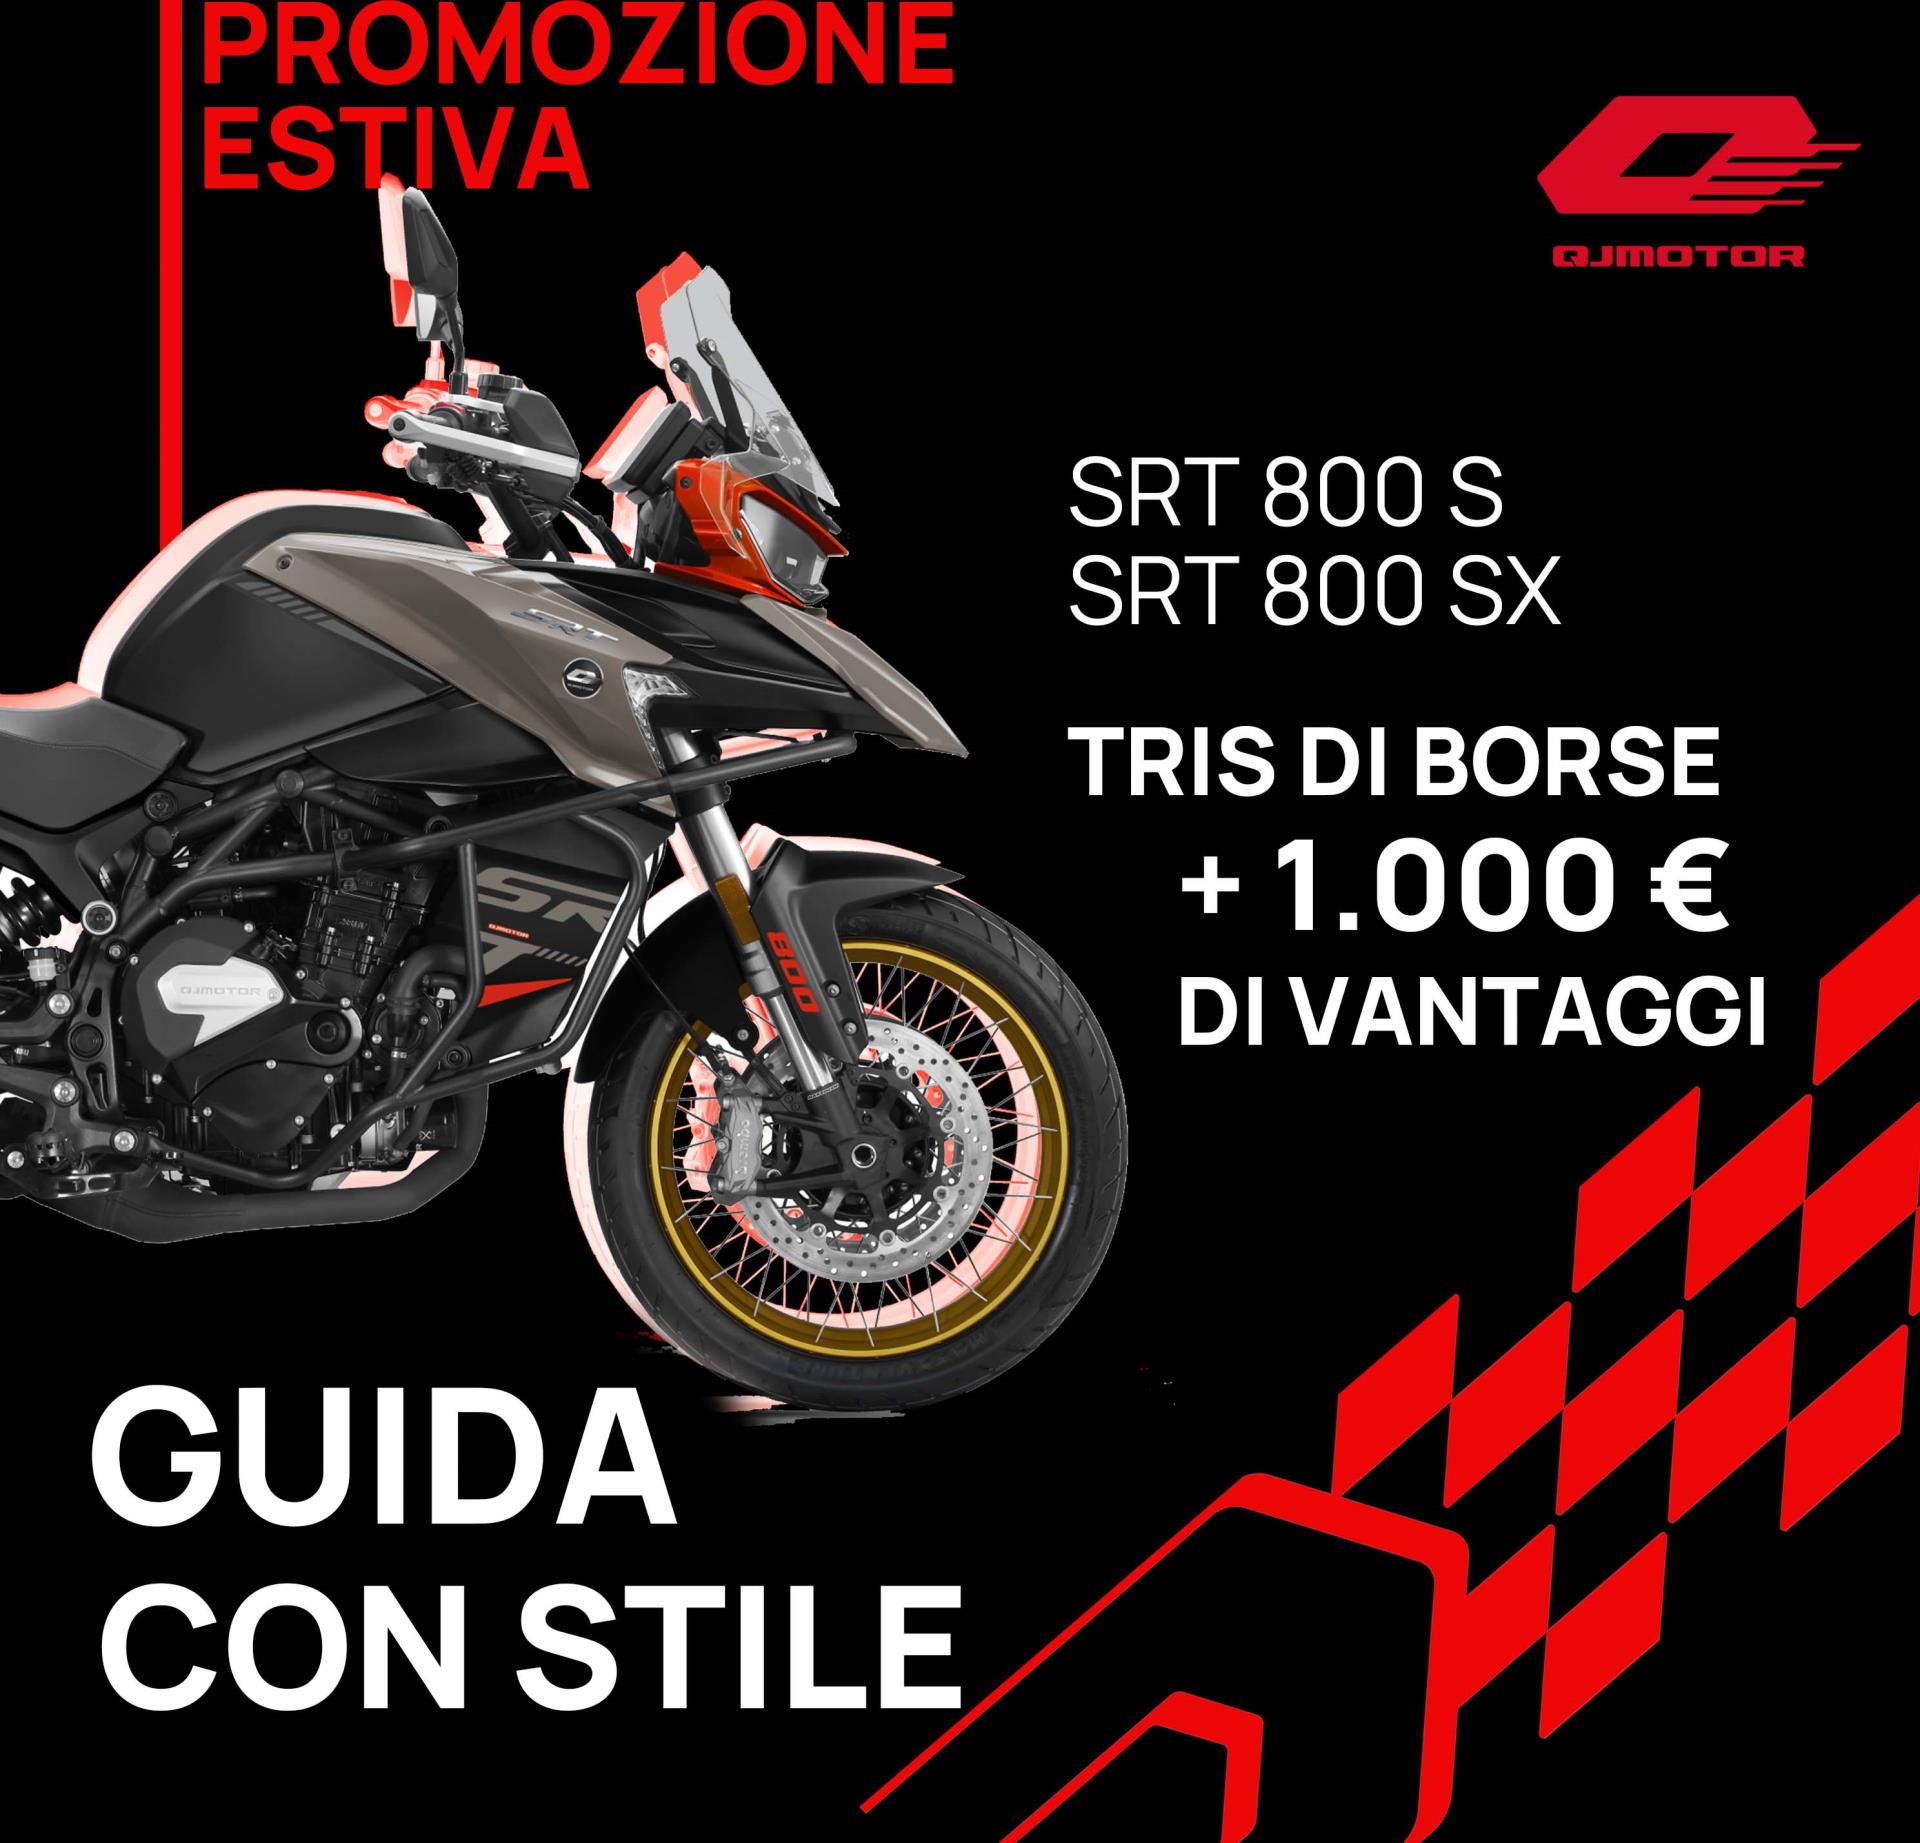 SRT 800S e SRT 800SX: Bonus di 1.000 euro + tris di borse incluse nel prezzo